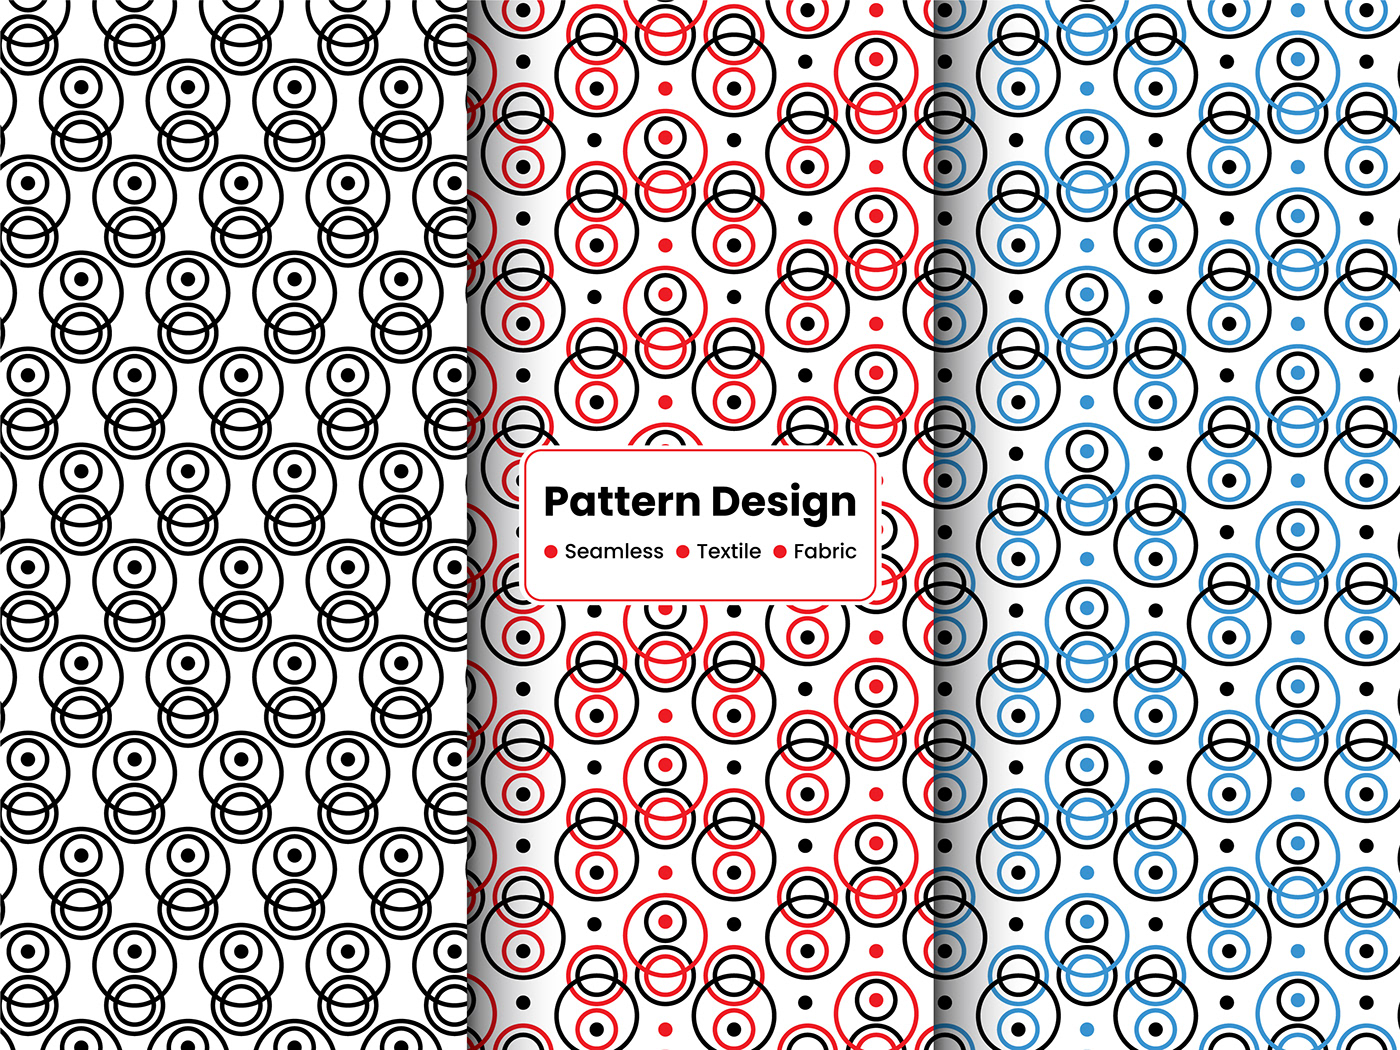 pattern pattern design  patterndesign Patterns fabric design clothing design Fashion  Photography  portrait photoshoot